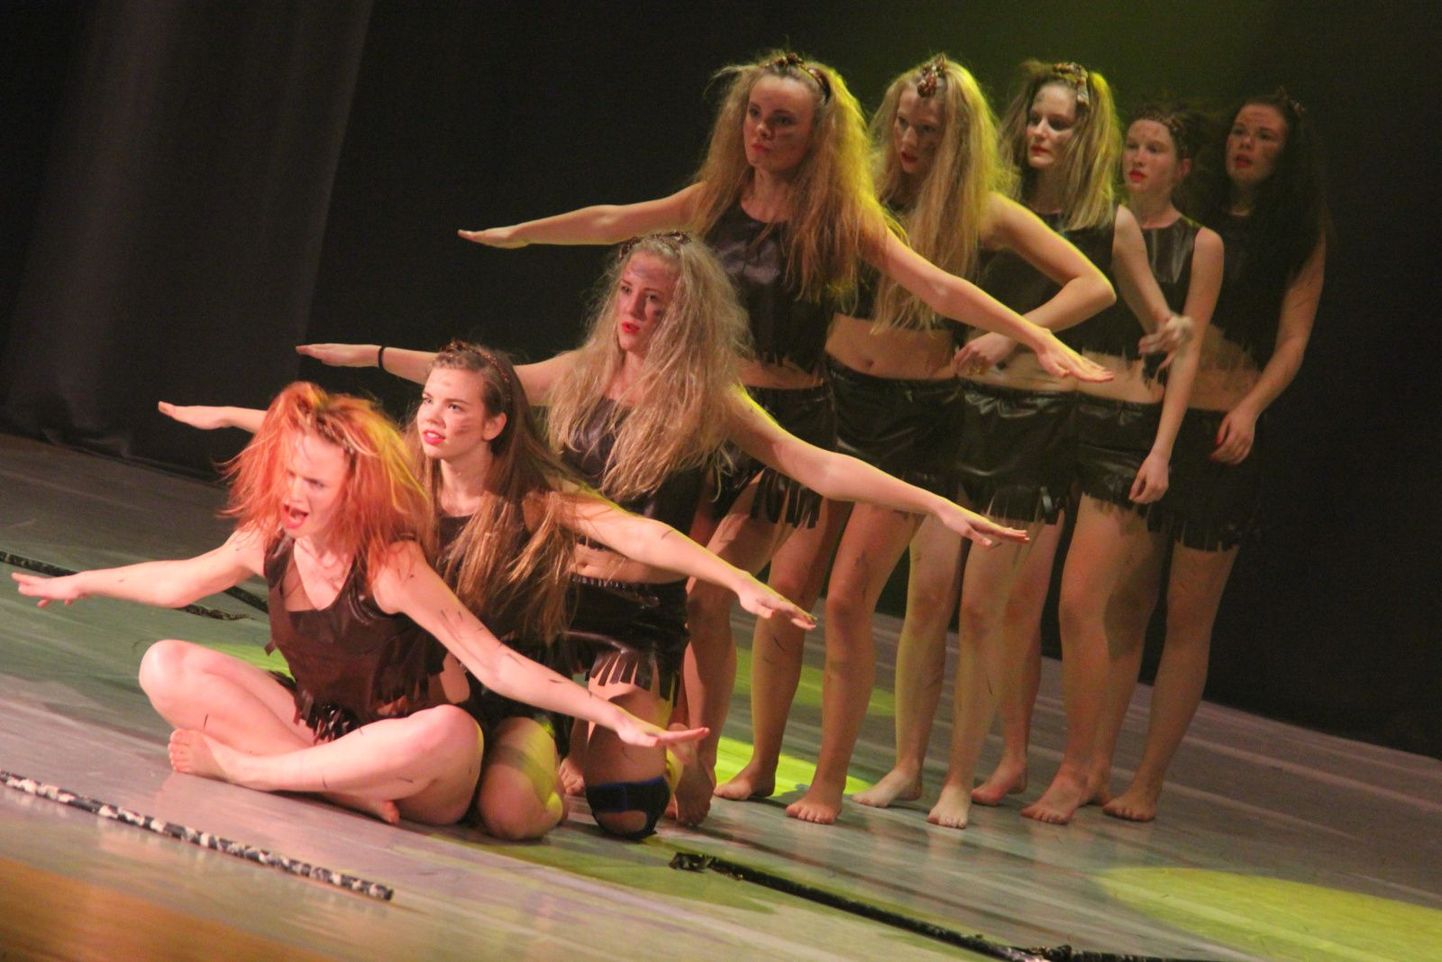 Koolitants 2014 maakondlik tantsupäev Valgas